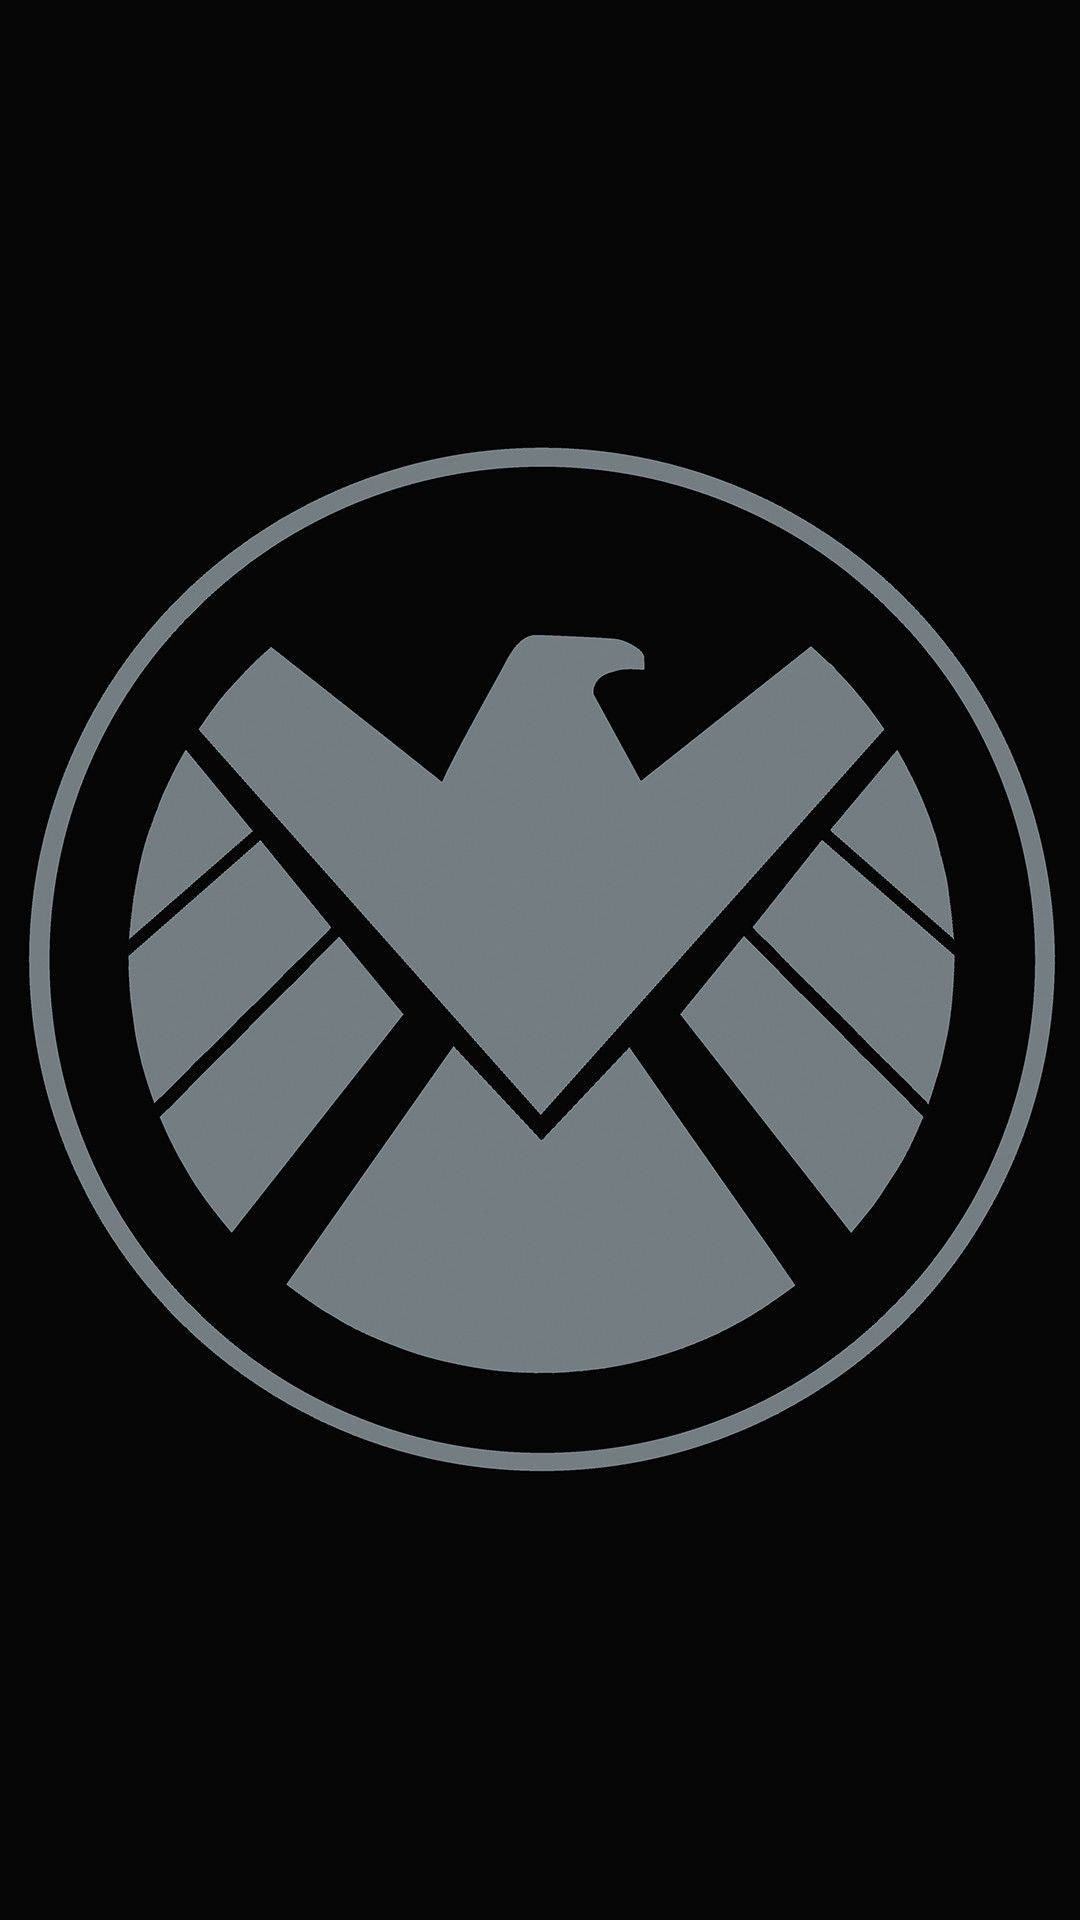 Avengers Shield Logo Marvel Phone